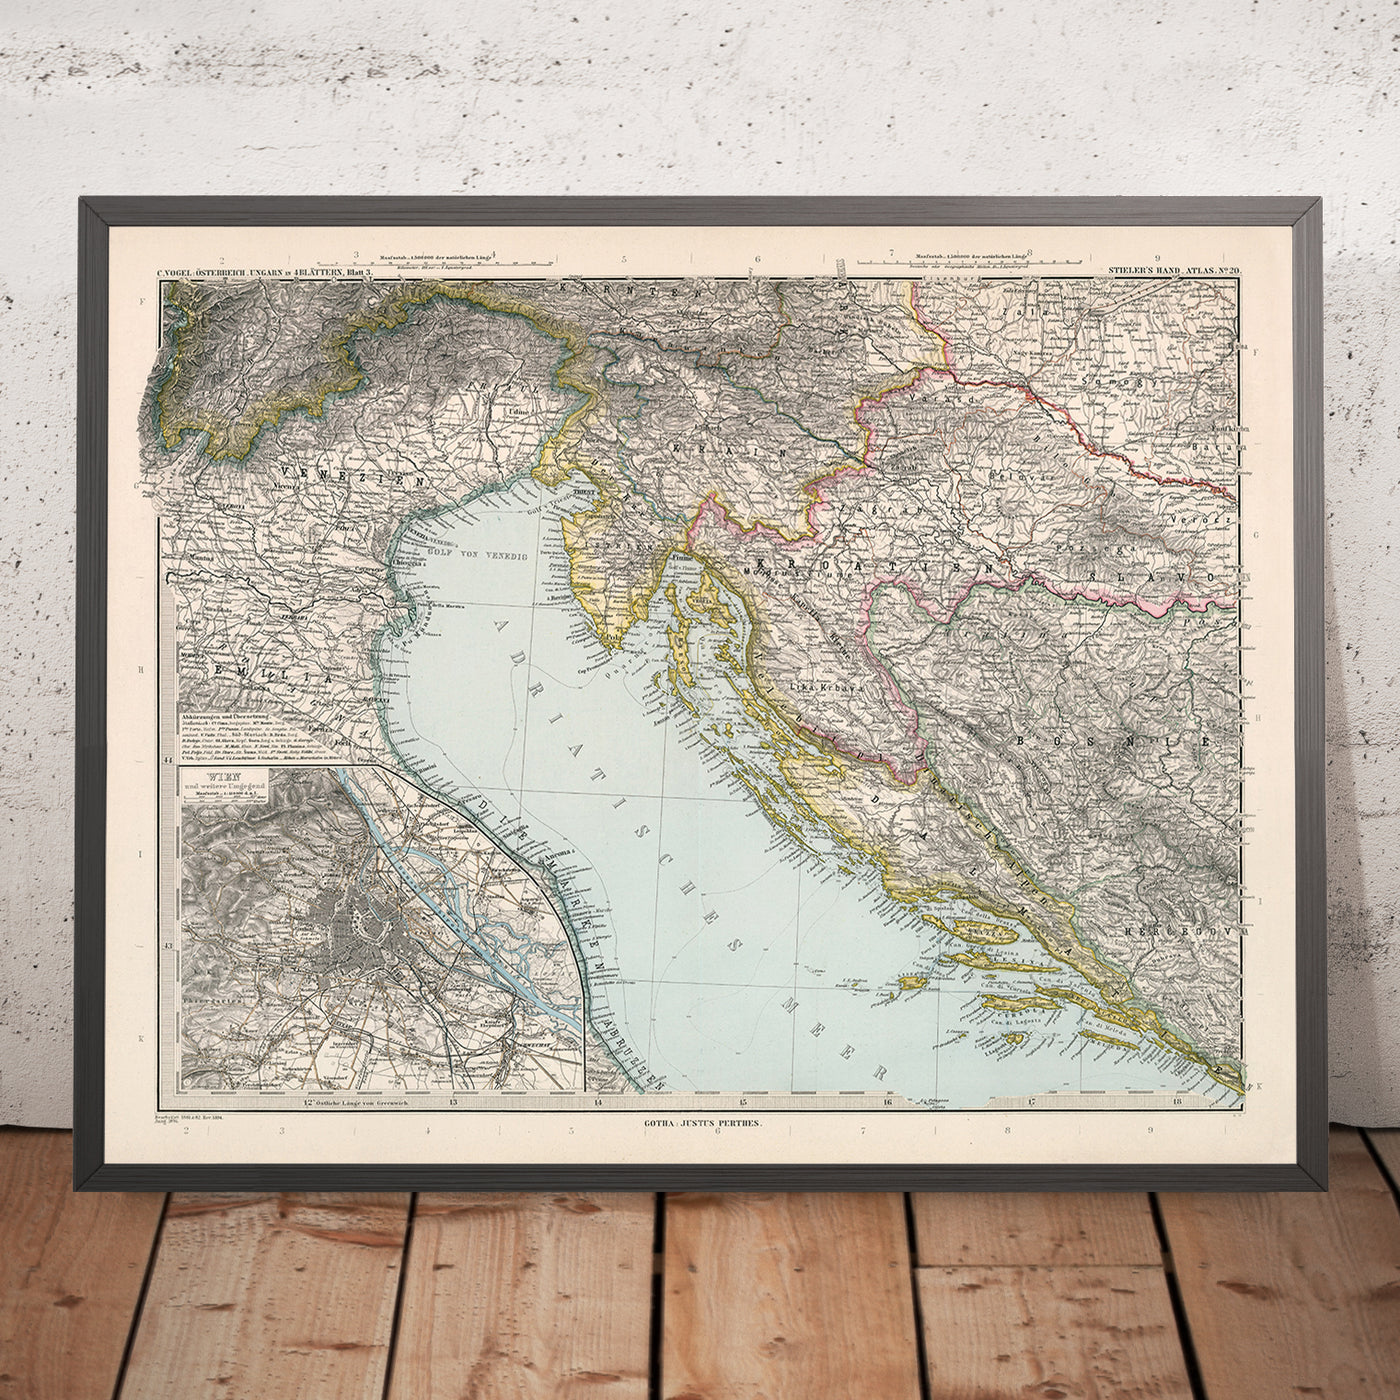 Mapa antiguo de Croacia y Bosnia de Adolf Stieler, 1894: mar Adriático, costa dálmata y montañas Velebit